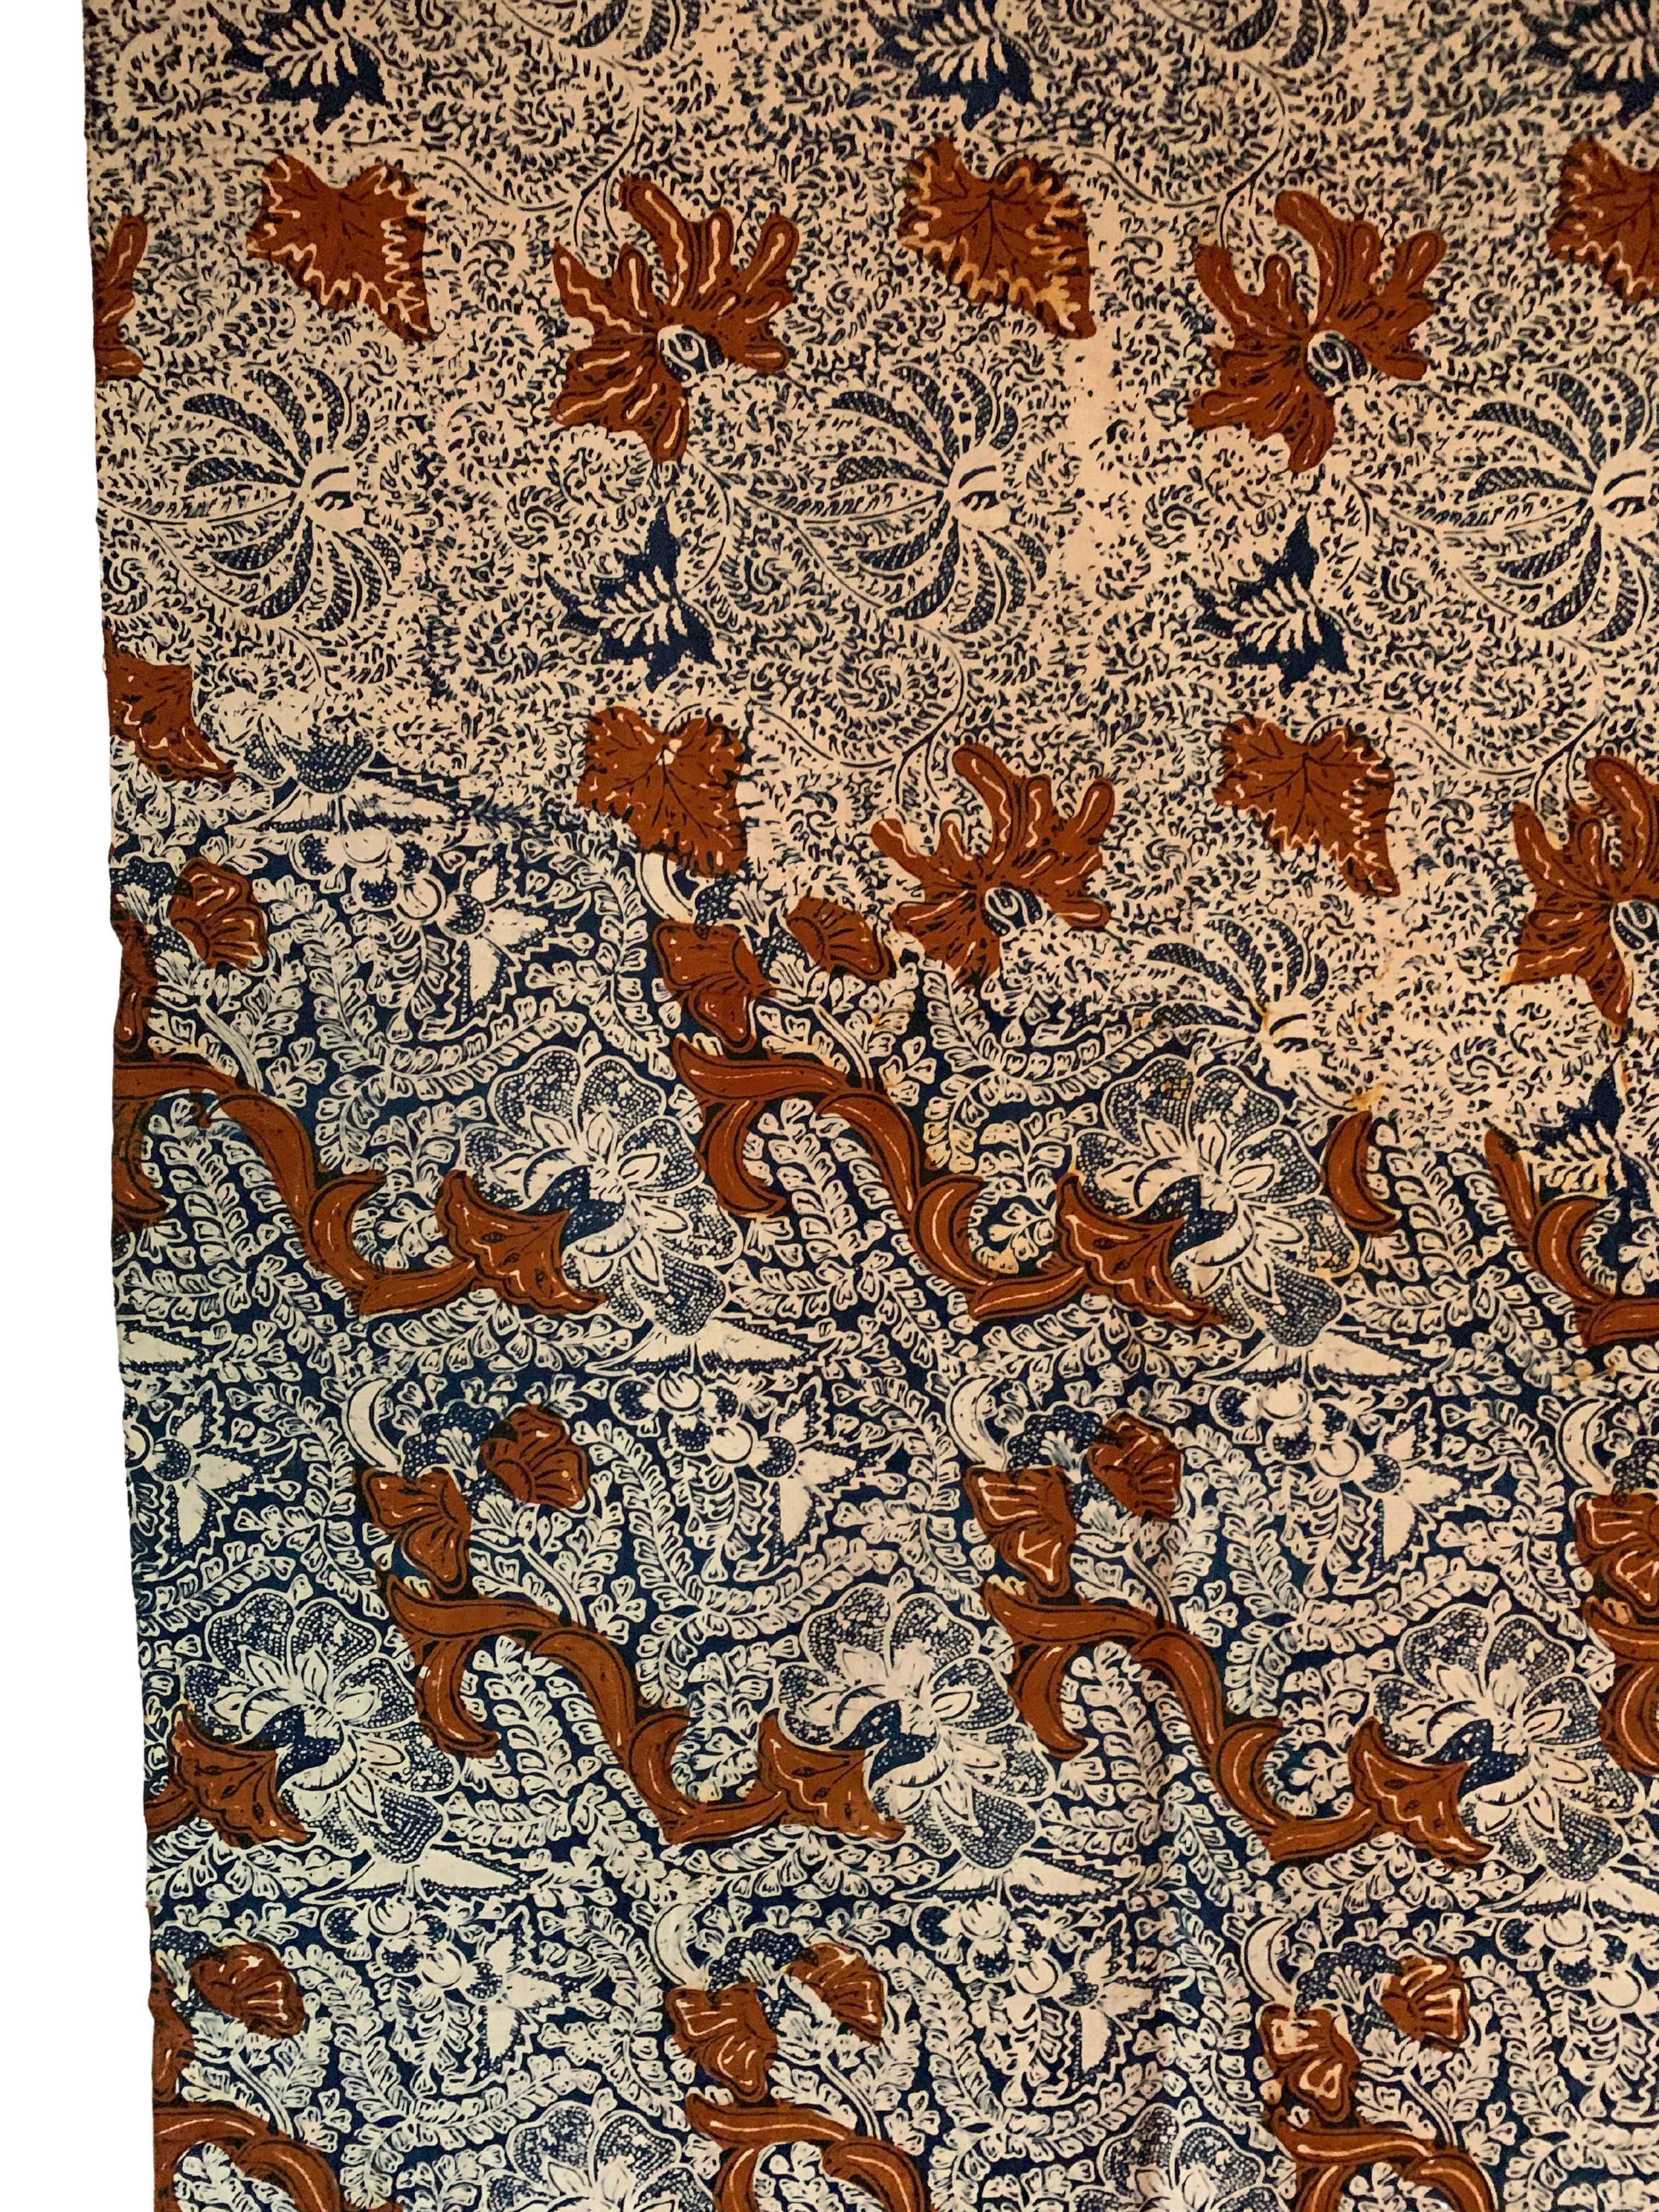 Ein schönes Beispiel für ein Batiktextil aus Solo, Java, Indonesien. Dieses Textil zeichnet sich durch wunderschöne Details und Kontraste aus. Es ist mit einer Vielzahl von Blumenmotiven verziert. 

